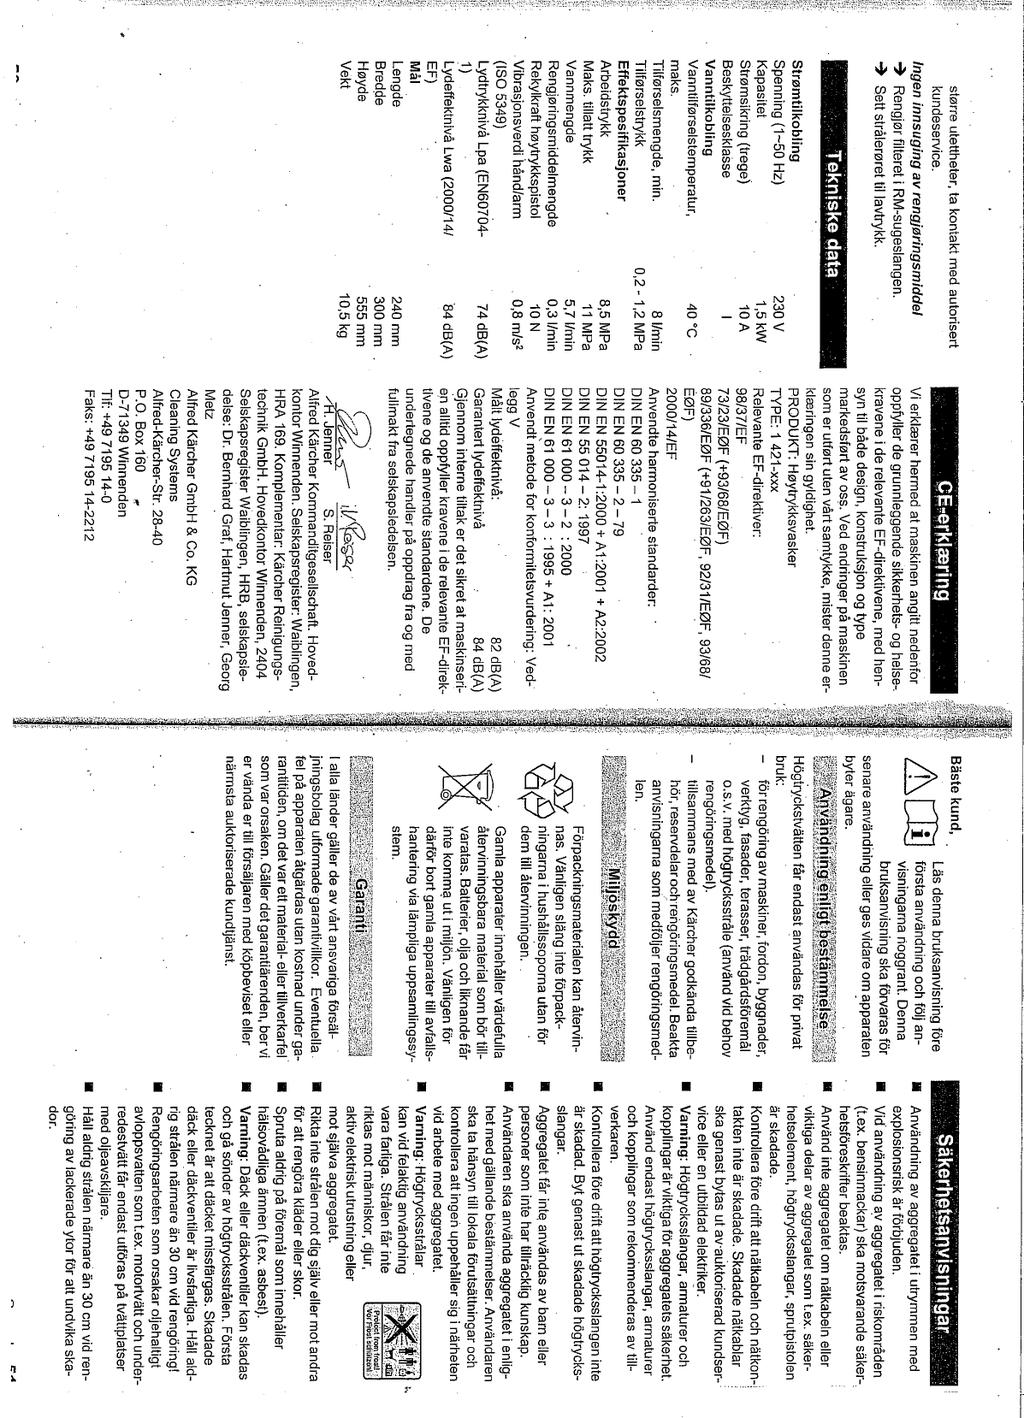 Vedlegg Appendix 1 2 Side Page 1 av of 1 1